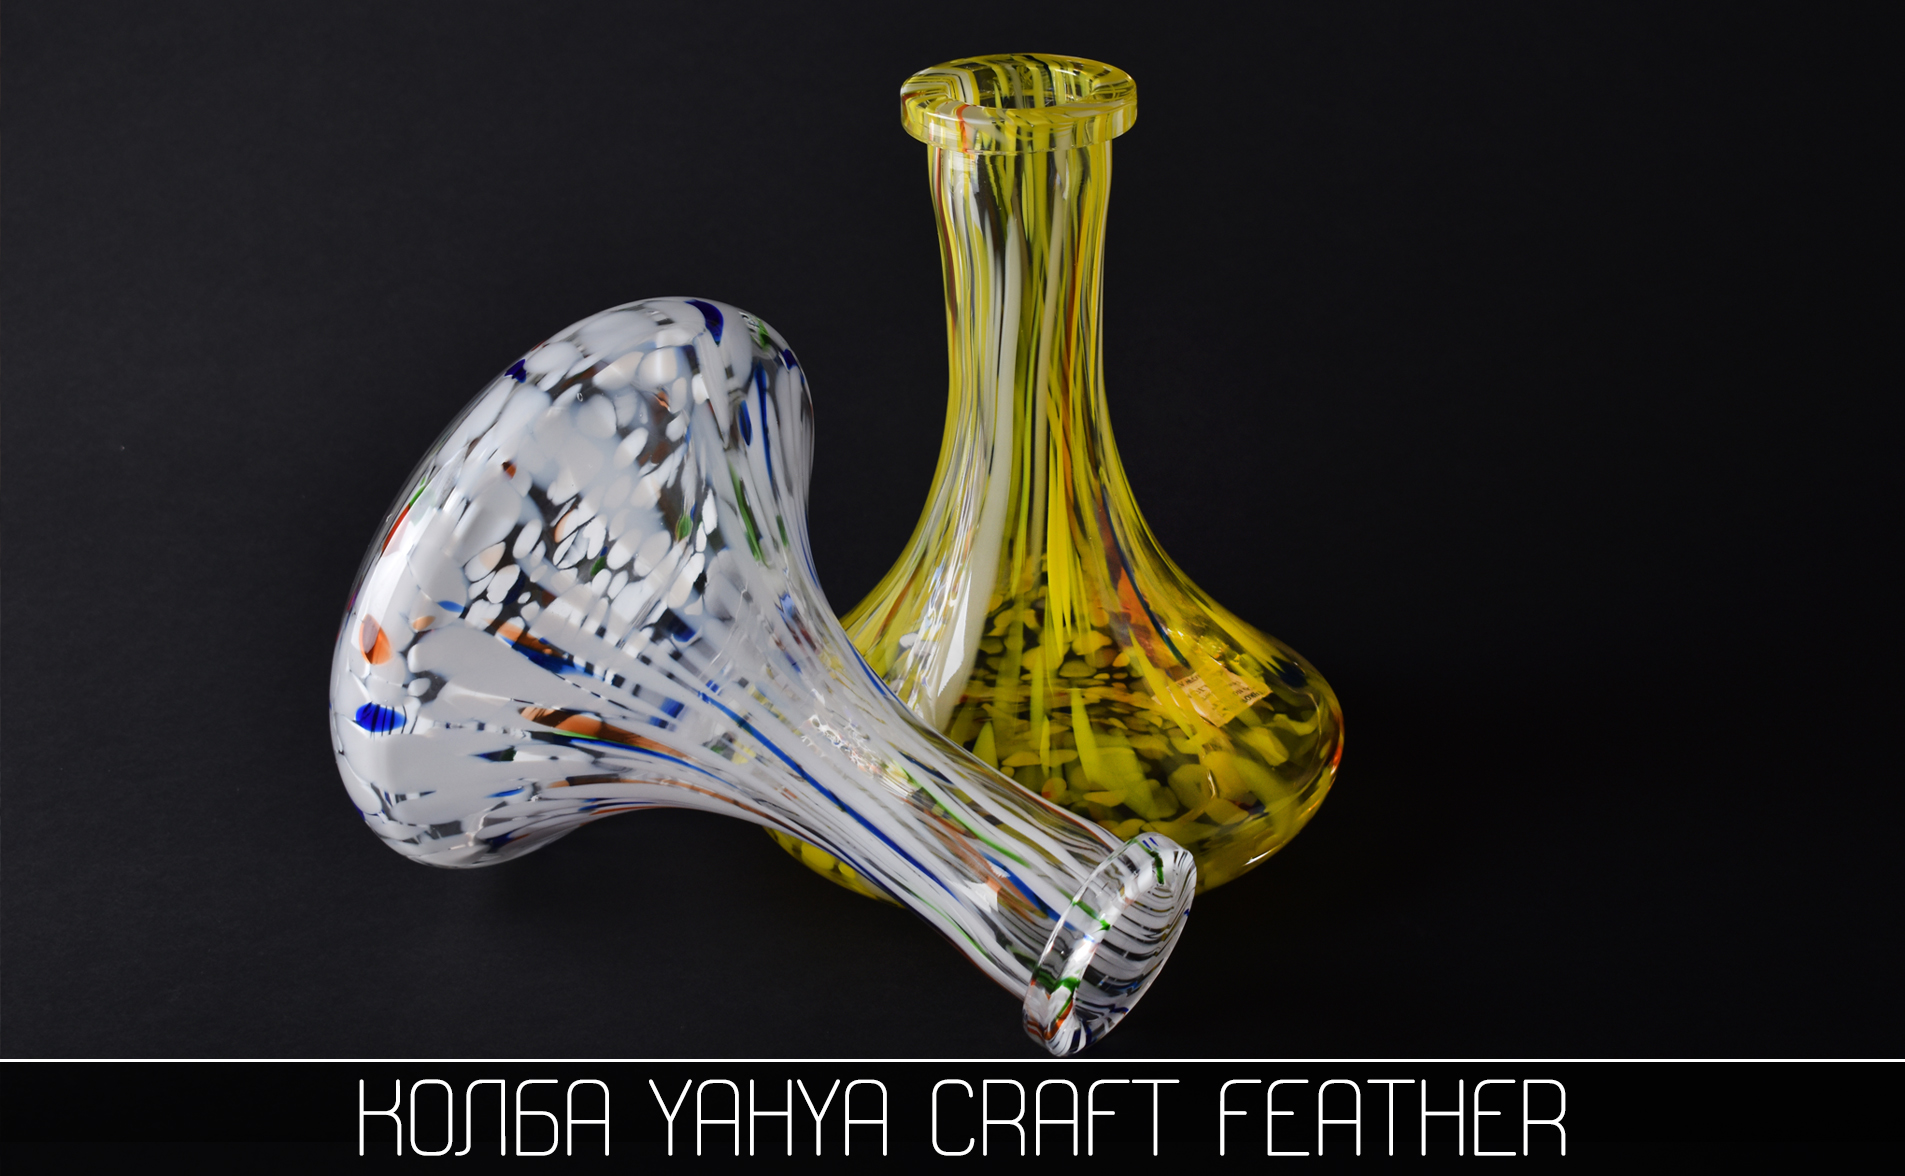 Колба для кальяна Yahya Craft Feather - фото 3 - Kalyanchik.ua